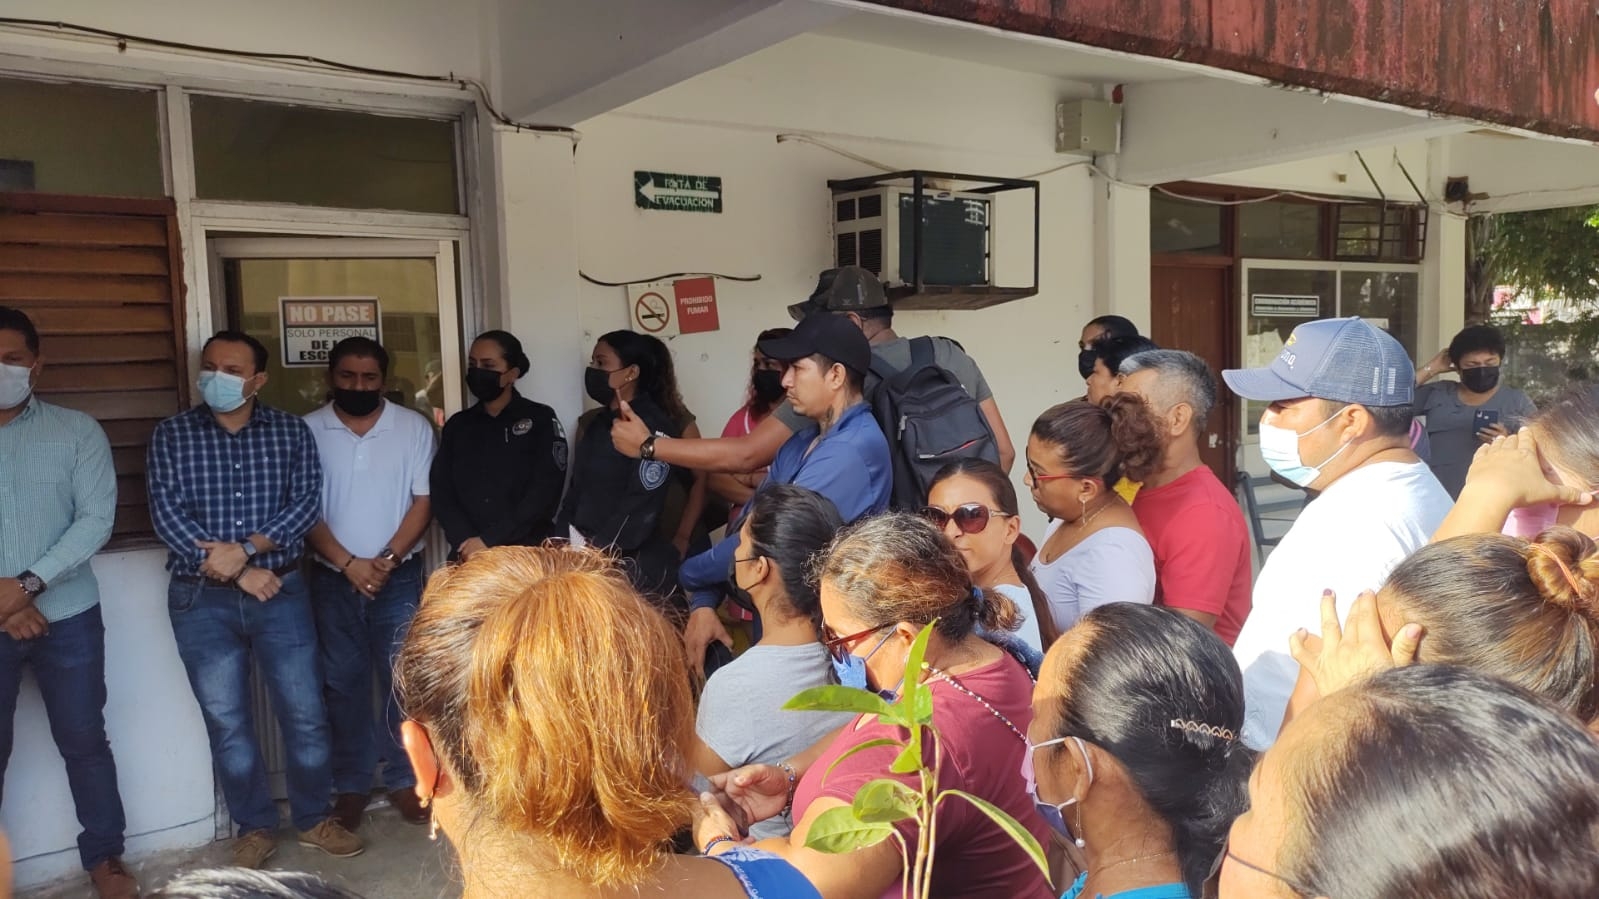 Padres de familia en Chetumal exigen 'revisión mochila' tras ingreso de una pistola en una escuela